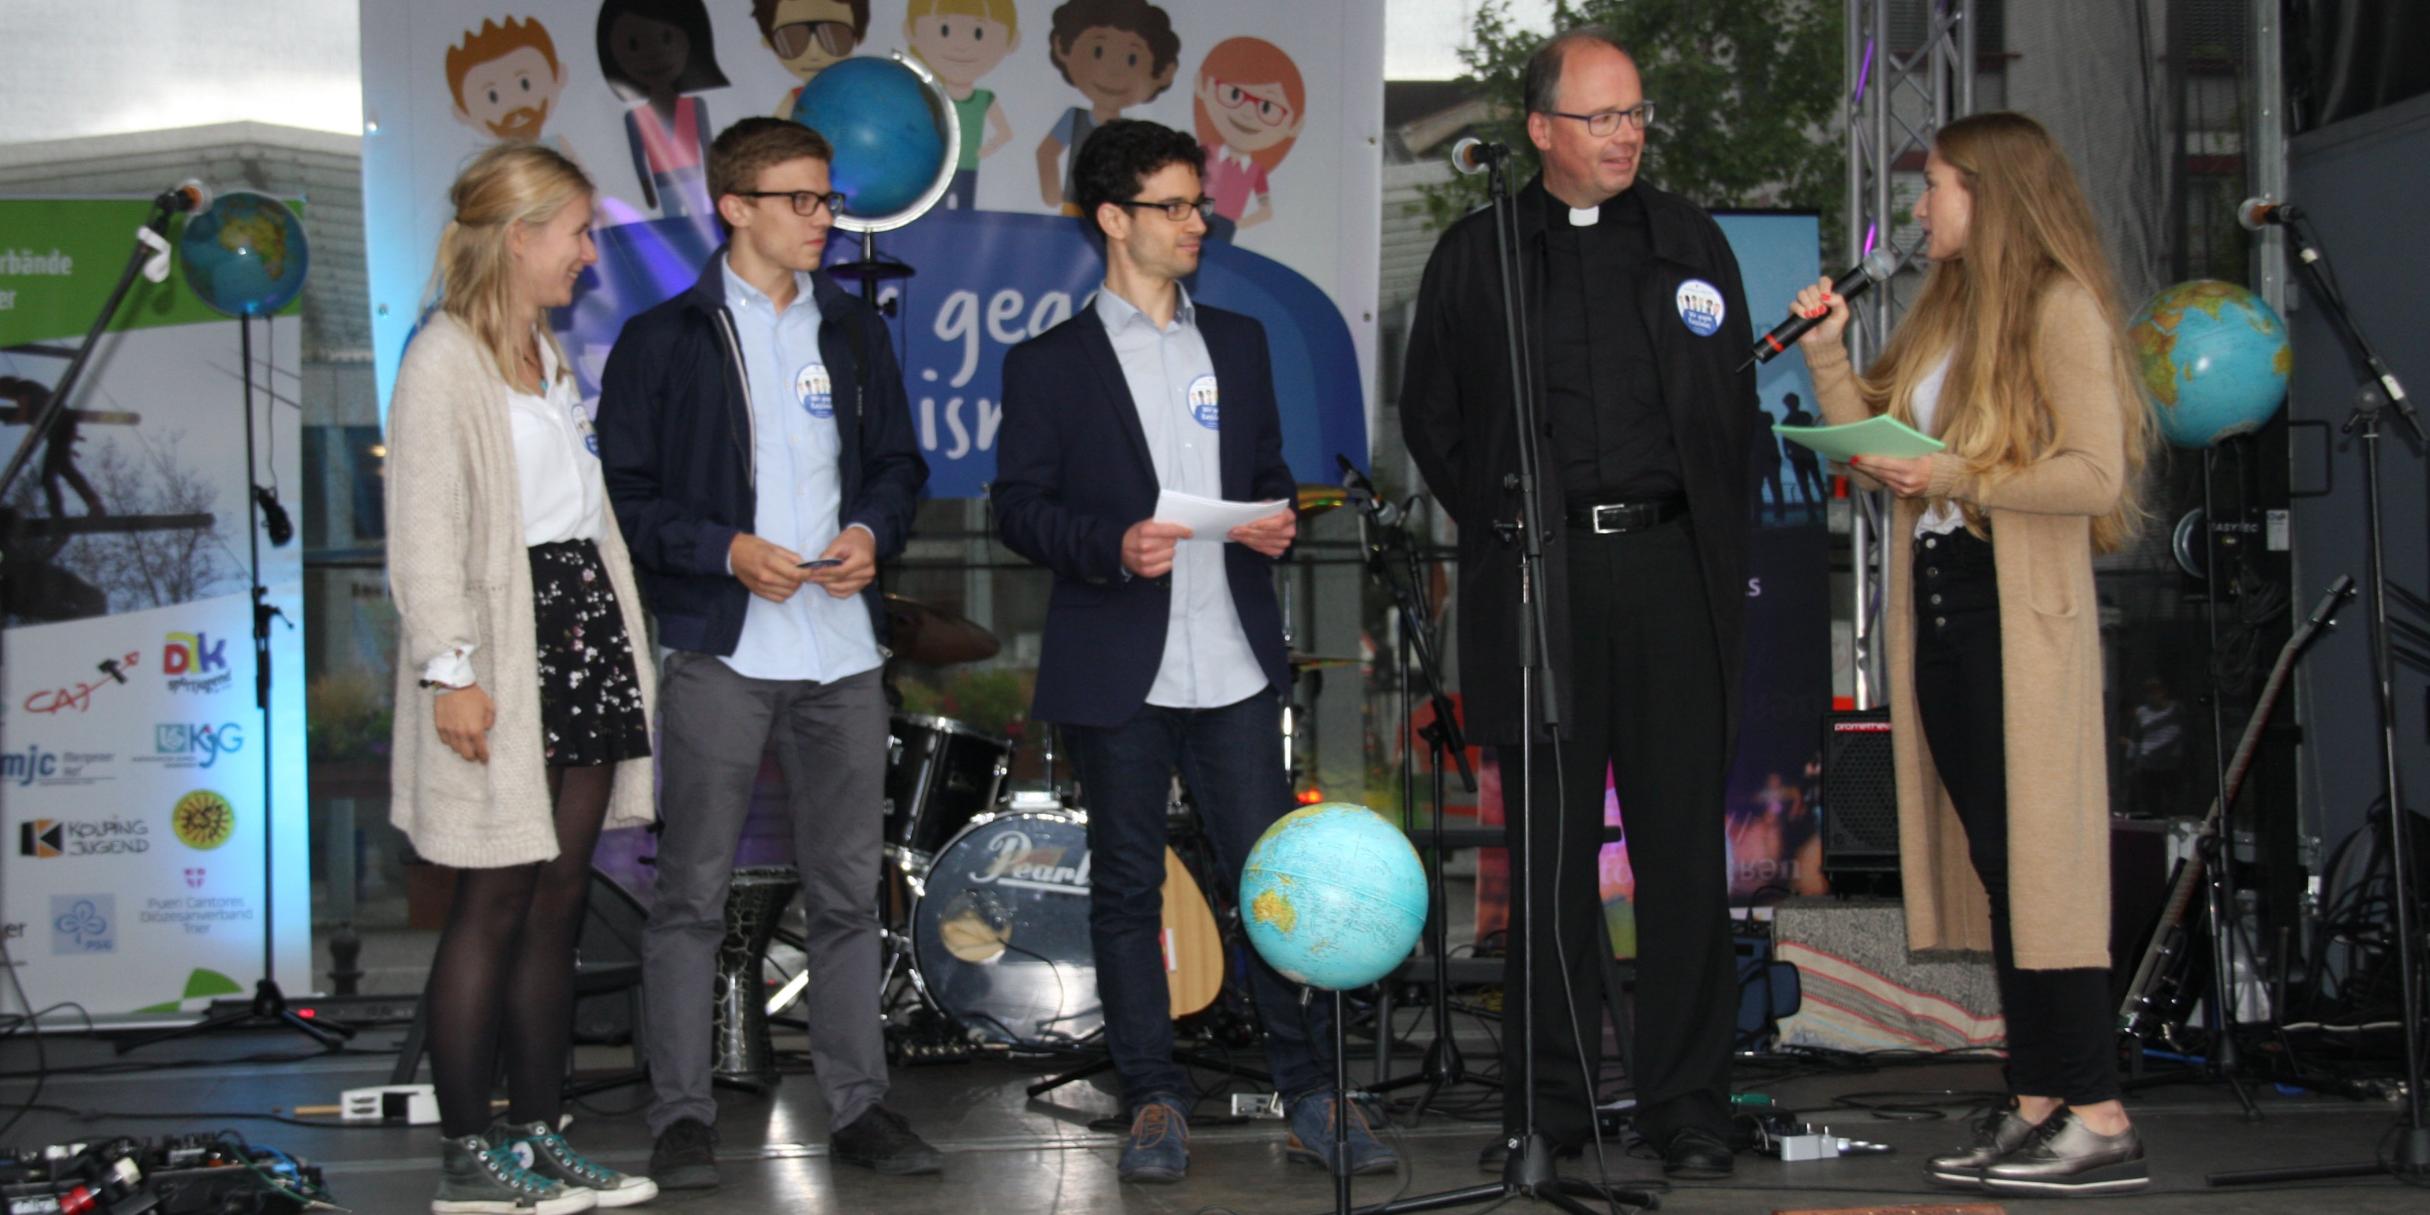 Bischof Ackermann beantwortet die Fragen der Moderatoren Lena Binz (rechts) und Christopher Hoffmann (Dritter v. links). Paulina und Johannes erklären den Ablauf der Aktion.